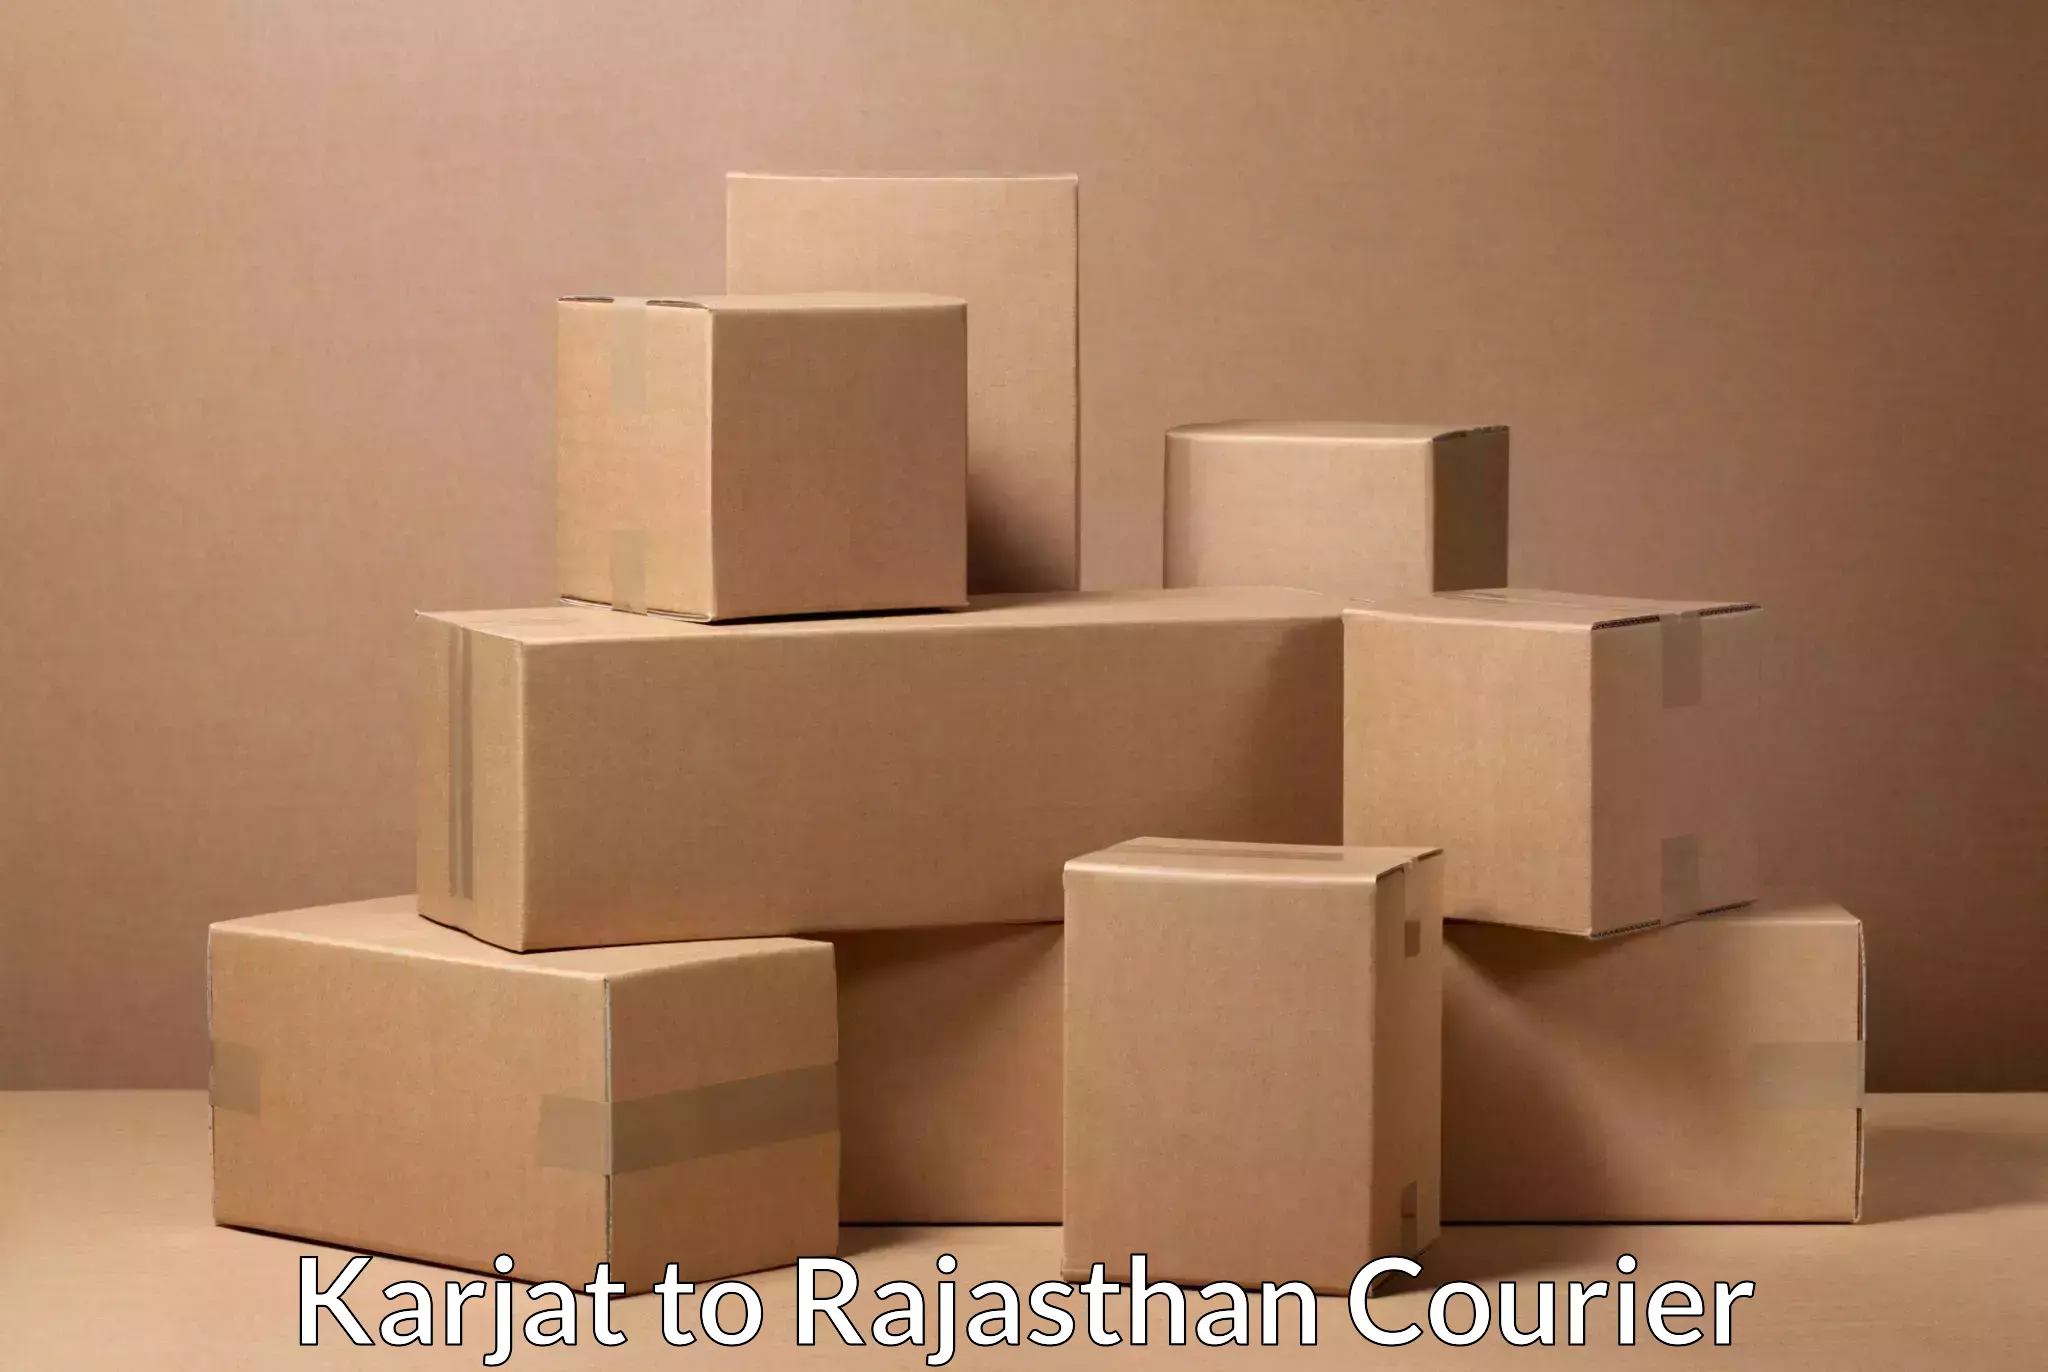 Customer-friendly courier services Karjat to Fatehnagar